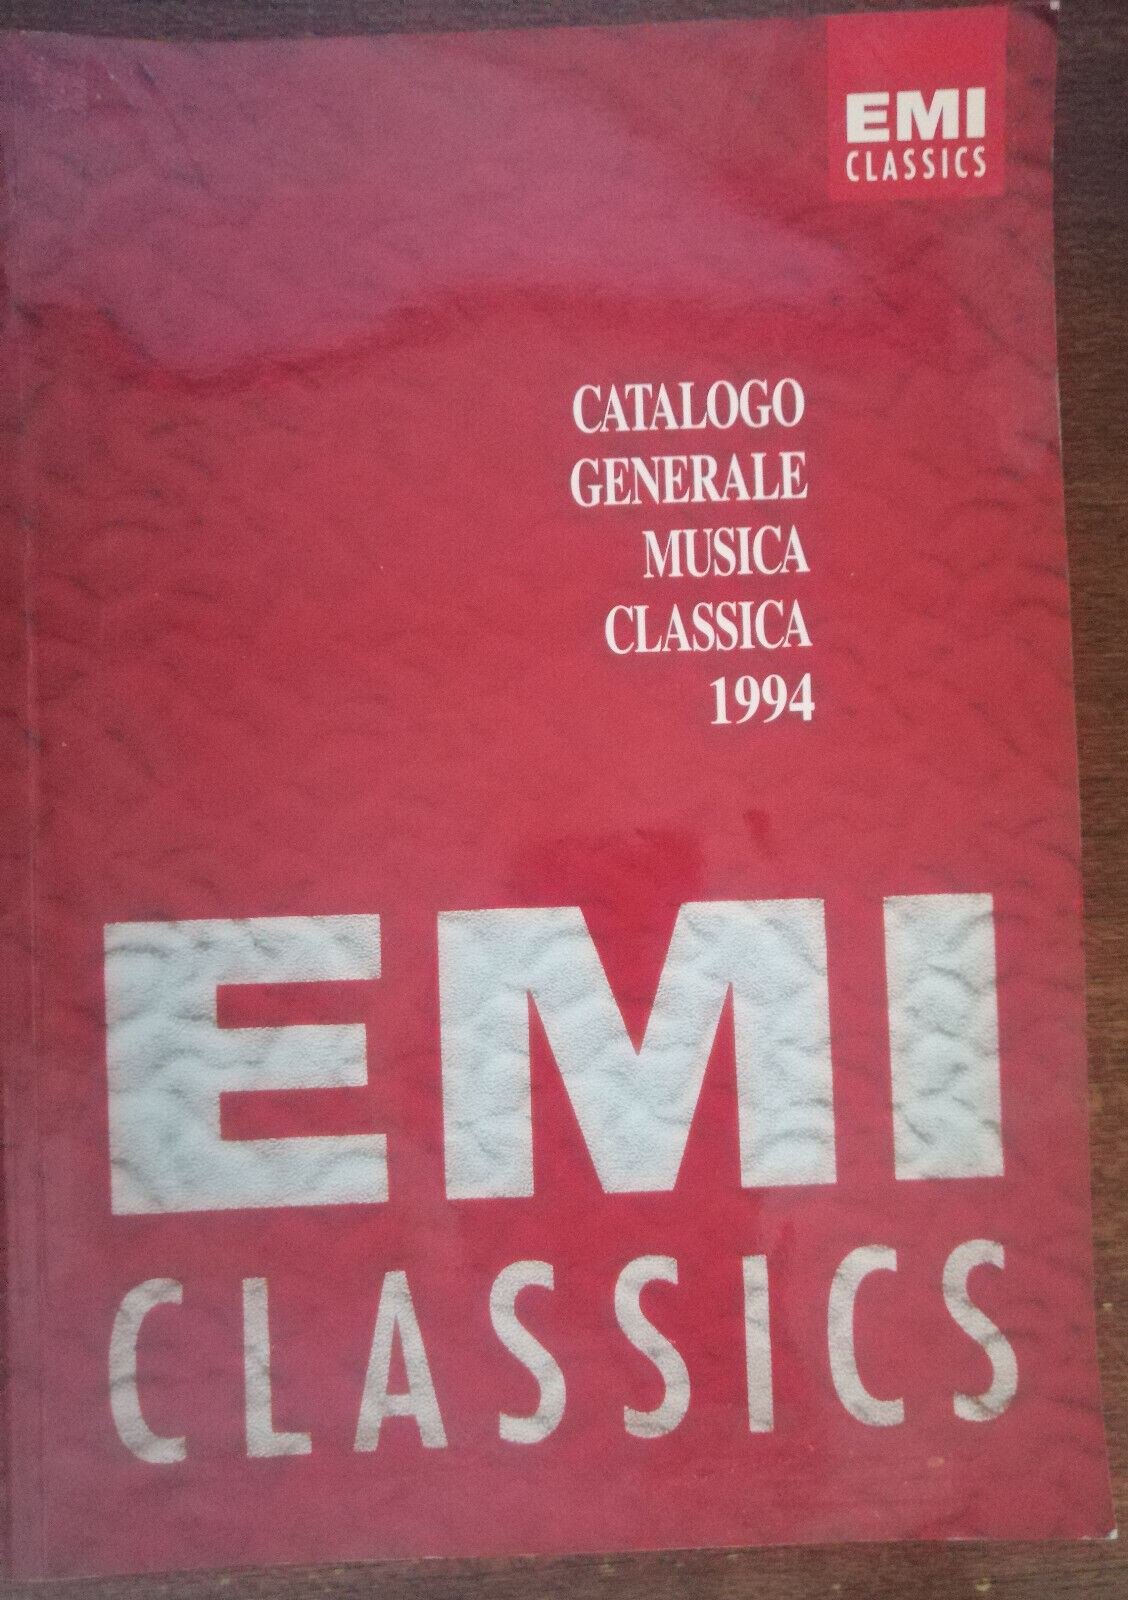 Catalogo Generale musica classica 1994 - AA.VV. - Emi Italia, 1993 - A